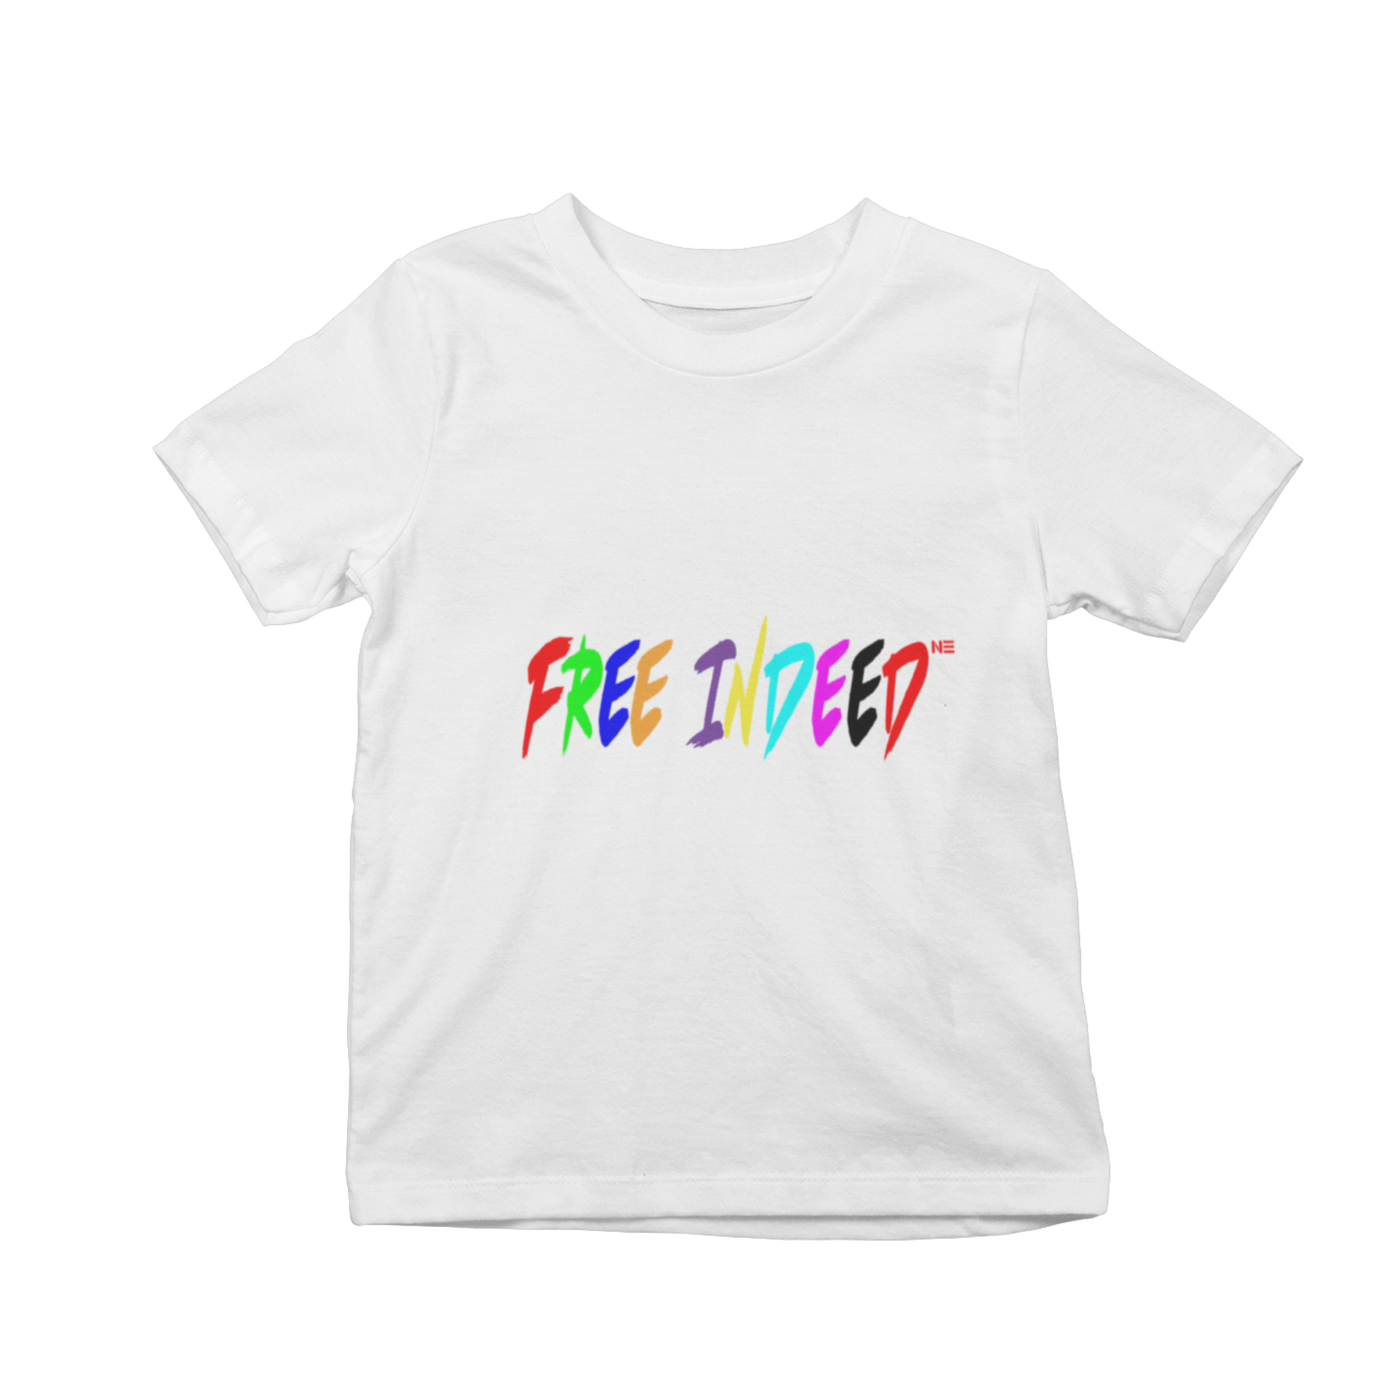 FREE INDEED - T-Shirt (Kids)